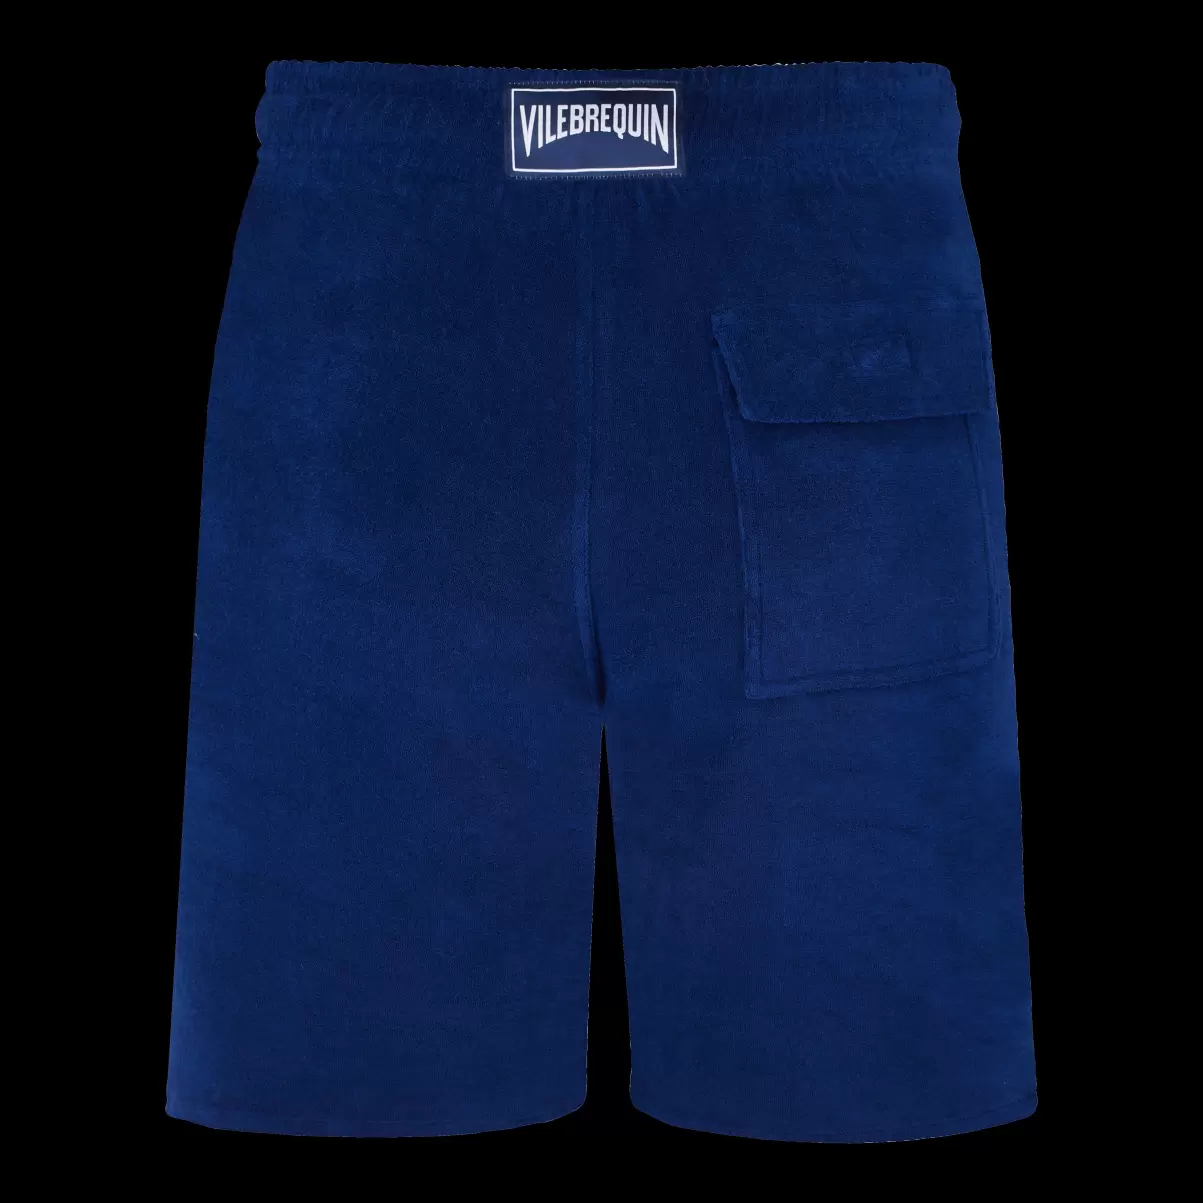 Ink / Blau Herren Shorts Lieferung Vilebrequin Solid Unisex-Bermudashorts Aus Frottee - 4